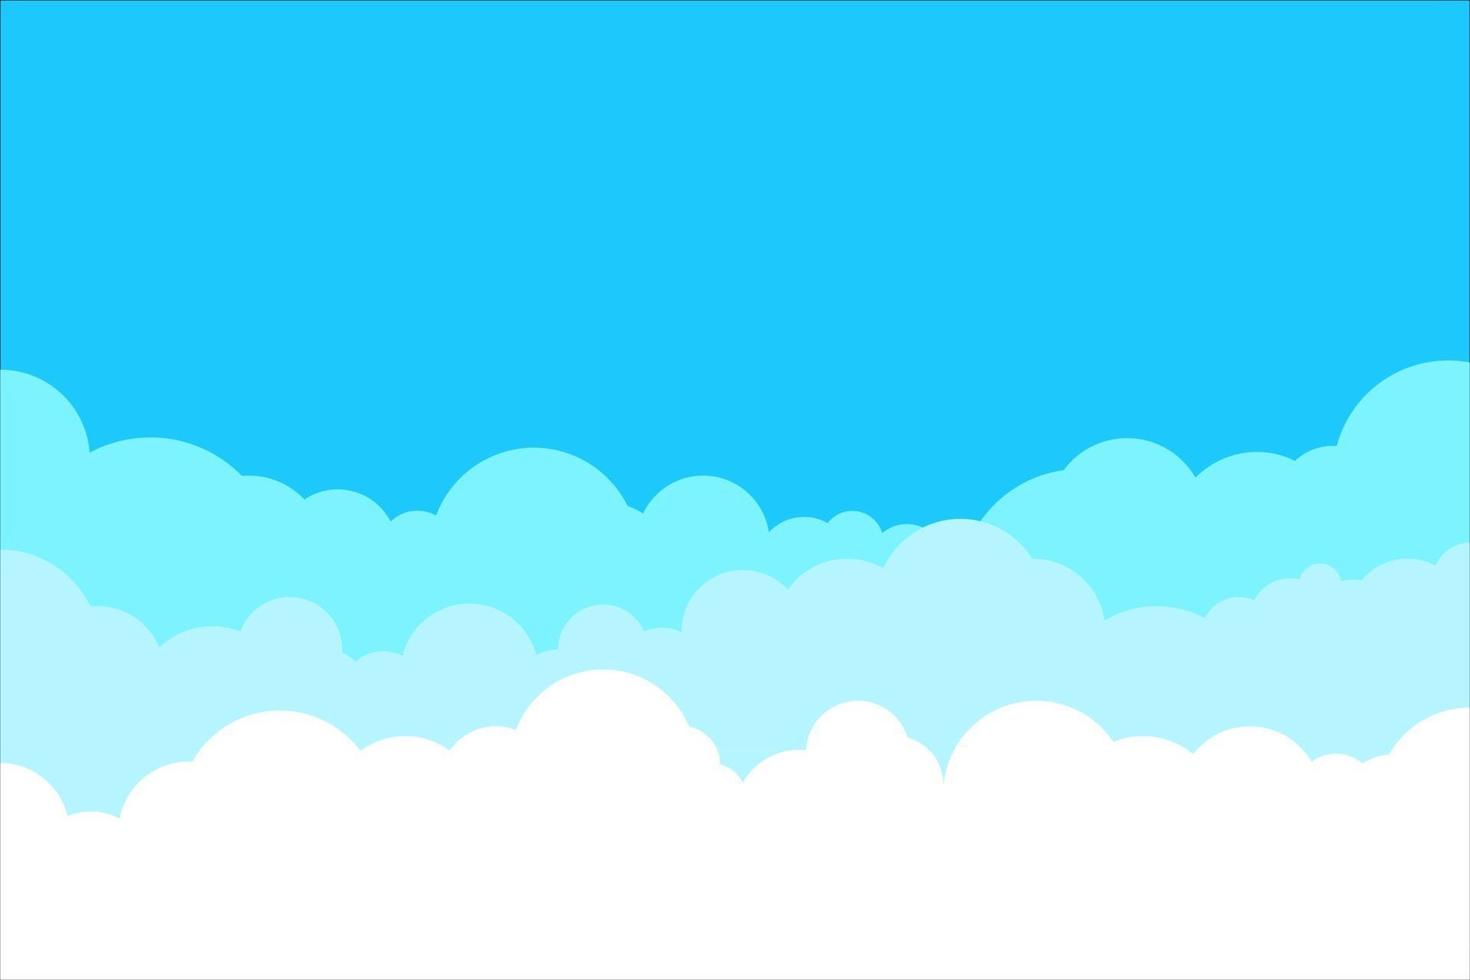 blå himmel med vit moln bakgrund. gränsen till moln. enkel tecknad design. platt stil vektorillustration. vektor